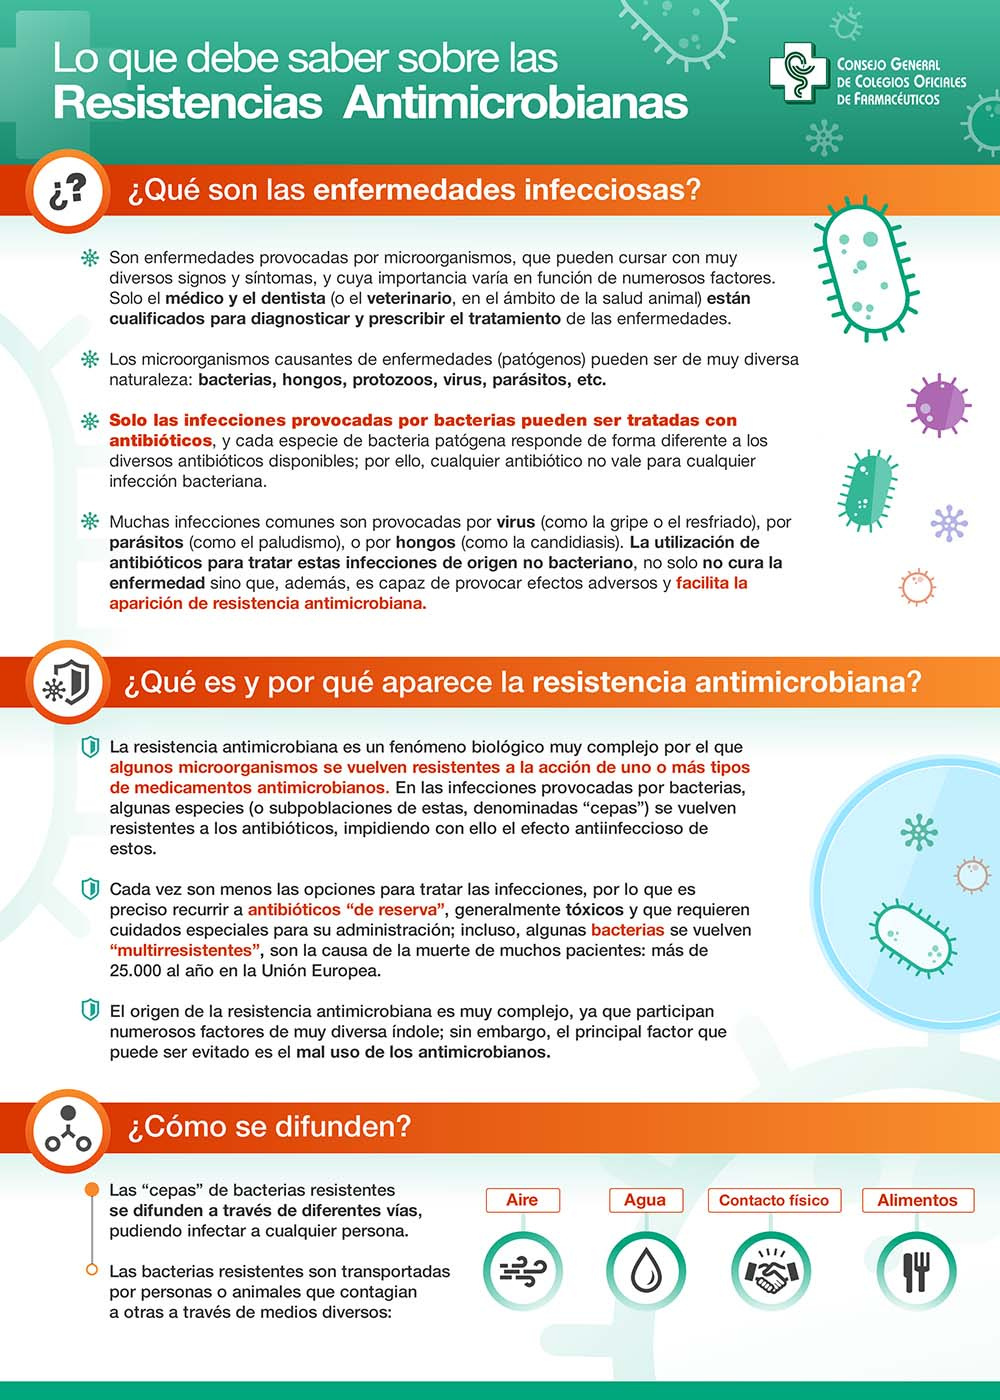 La resistencia antimicrobiana y el buen uso de los antibióticos